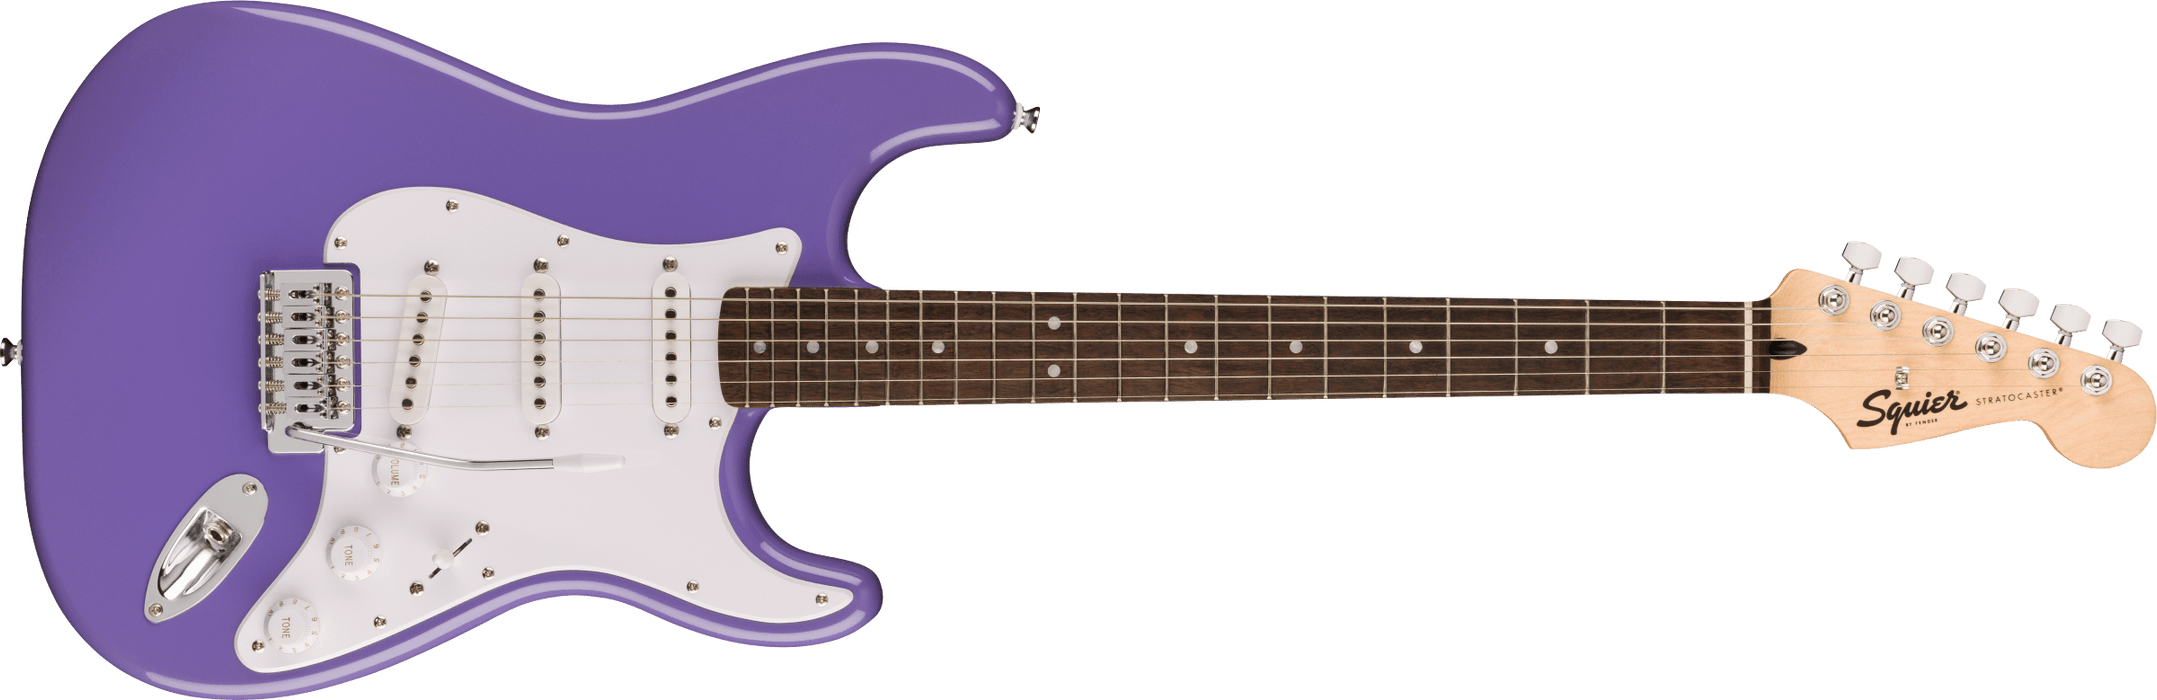 Fender  Squier Sonic™ Stratocaster®, Laurel Fingerboard, White Pickguard, Ultraviolet